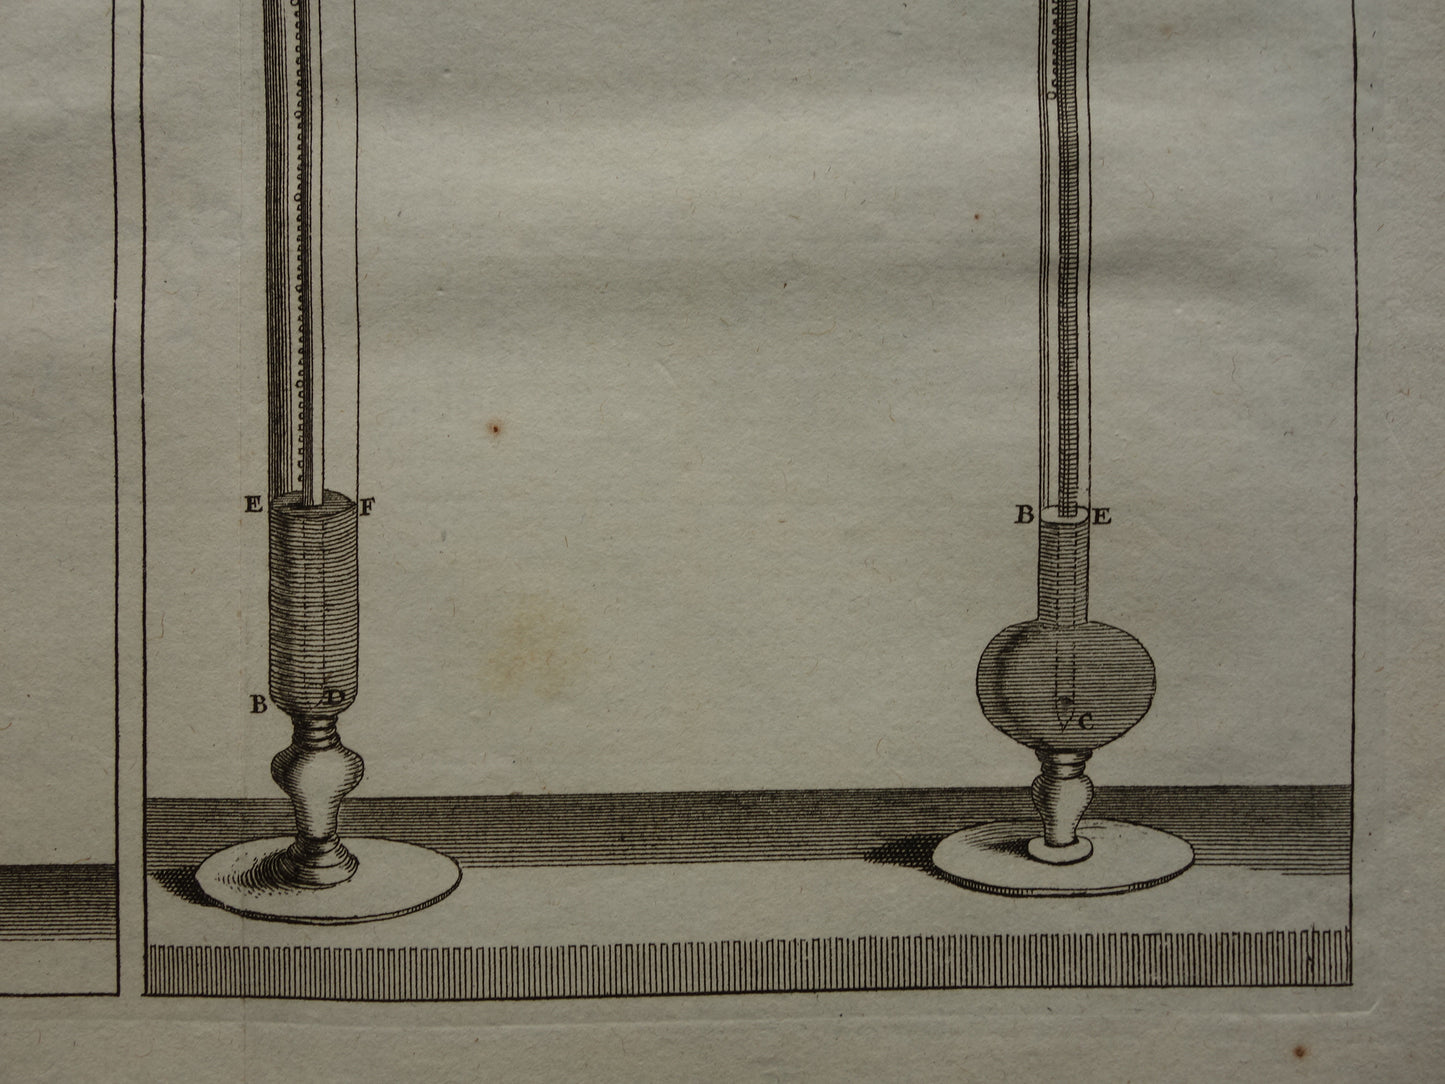 Vintage prent natuurkunde experimenten luchtdruk 1755 originele antieke illustratie van laboratorium proeven met kwik